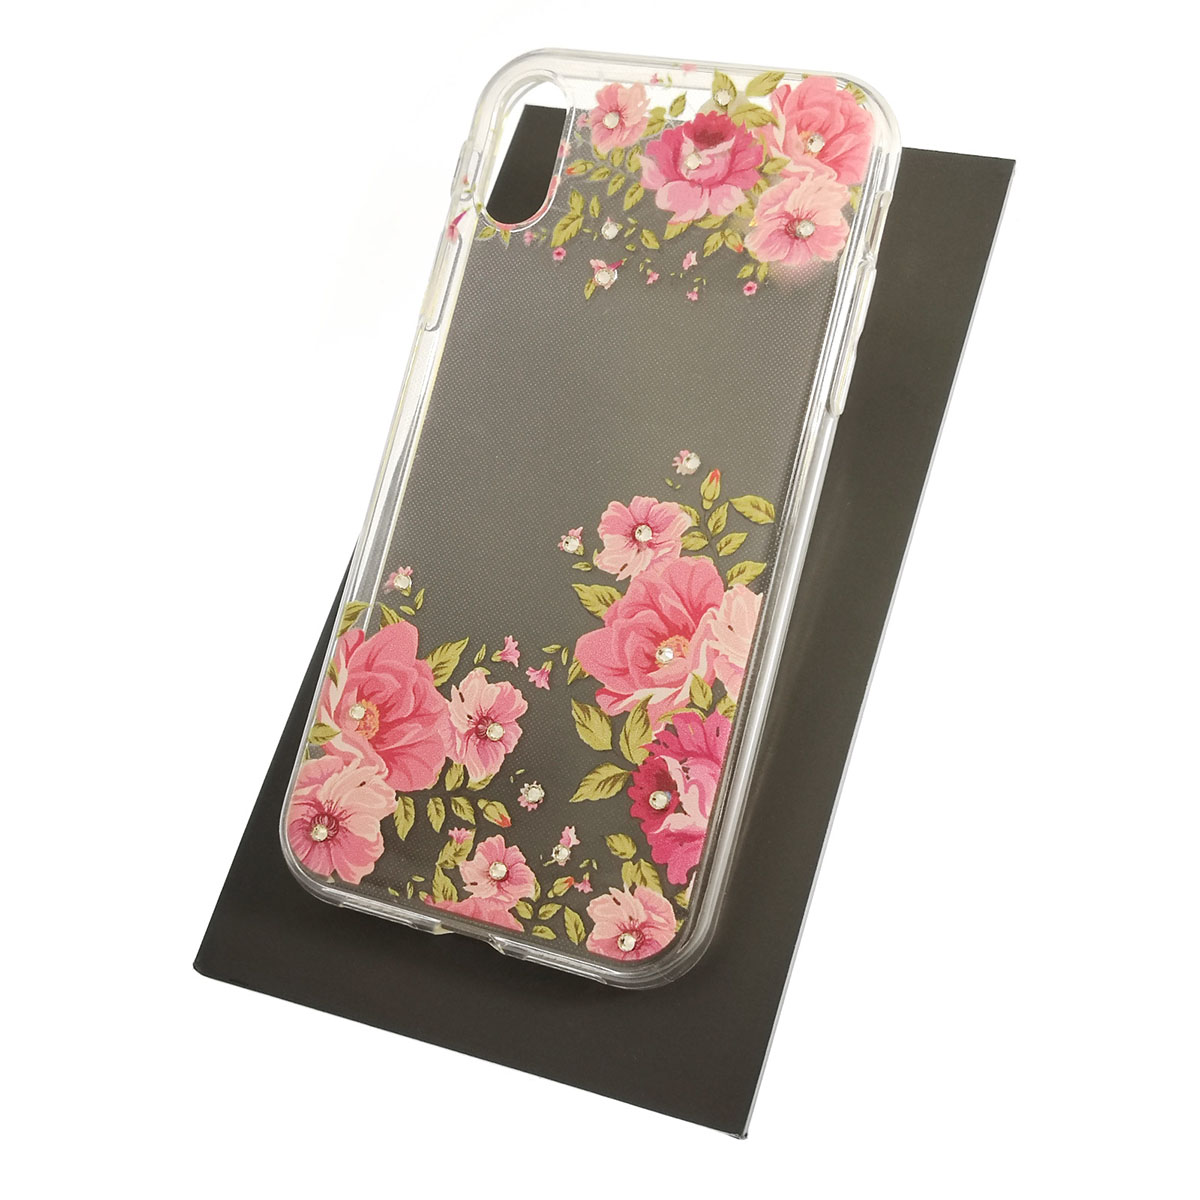 Чехол накладка для APPLE iPhone XR, силикон, стразы, рисунок цветы.